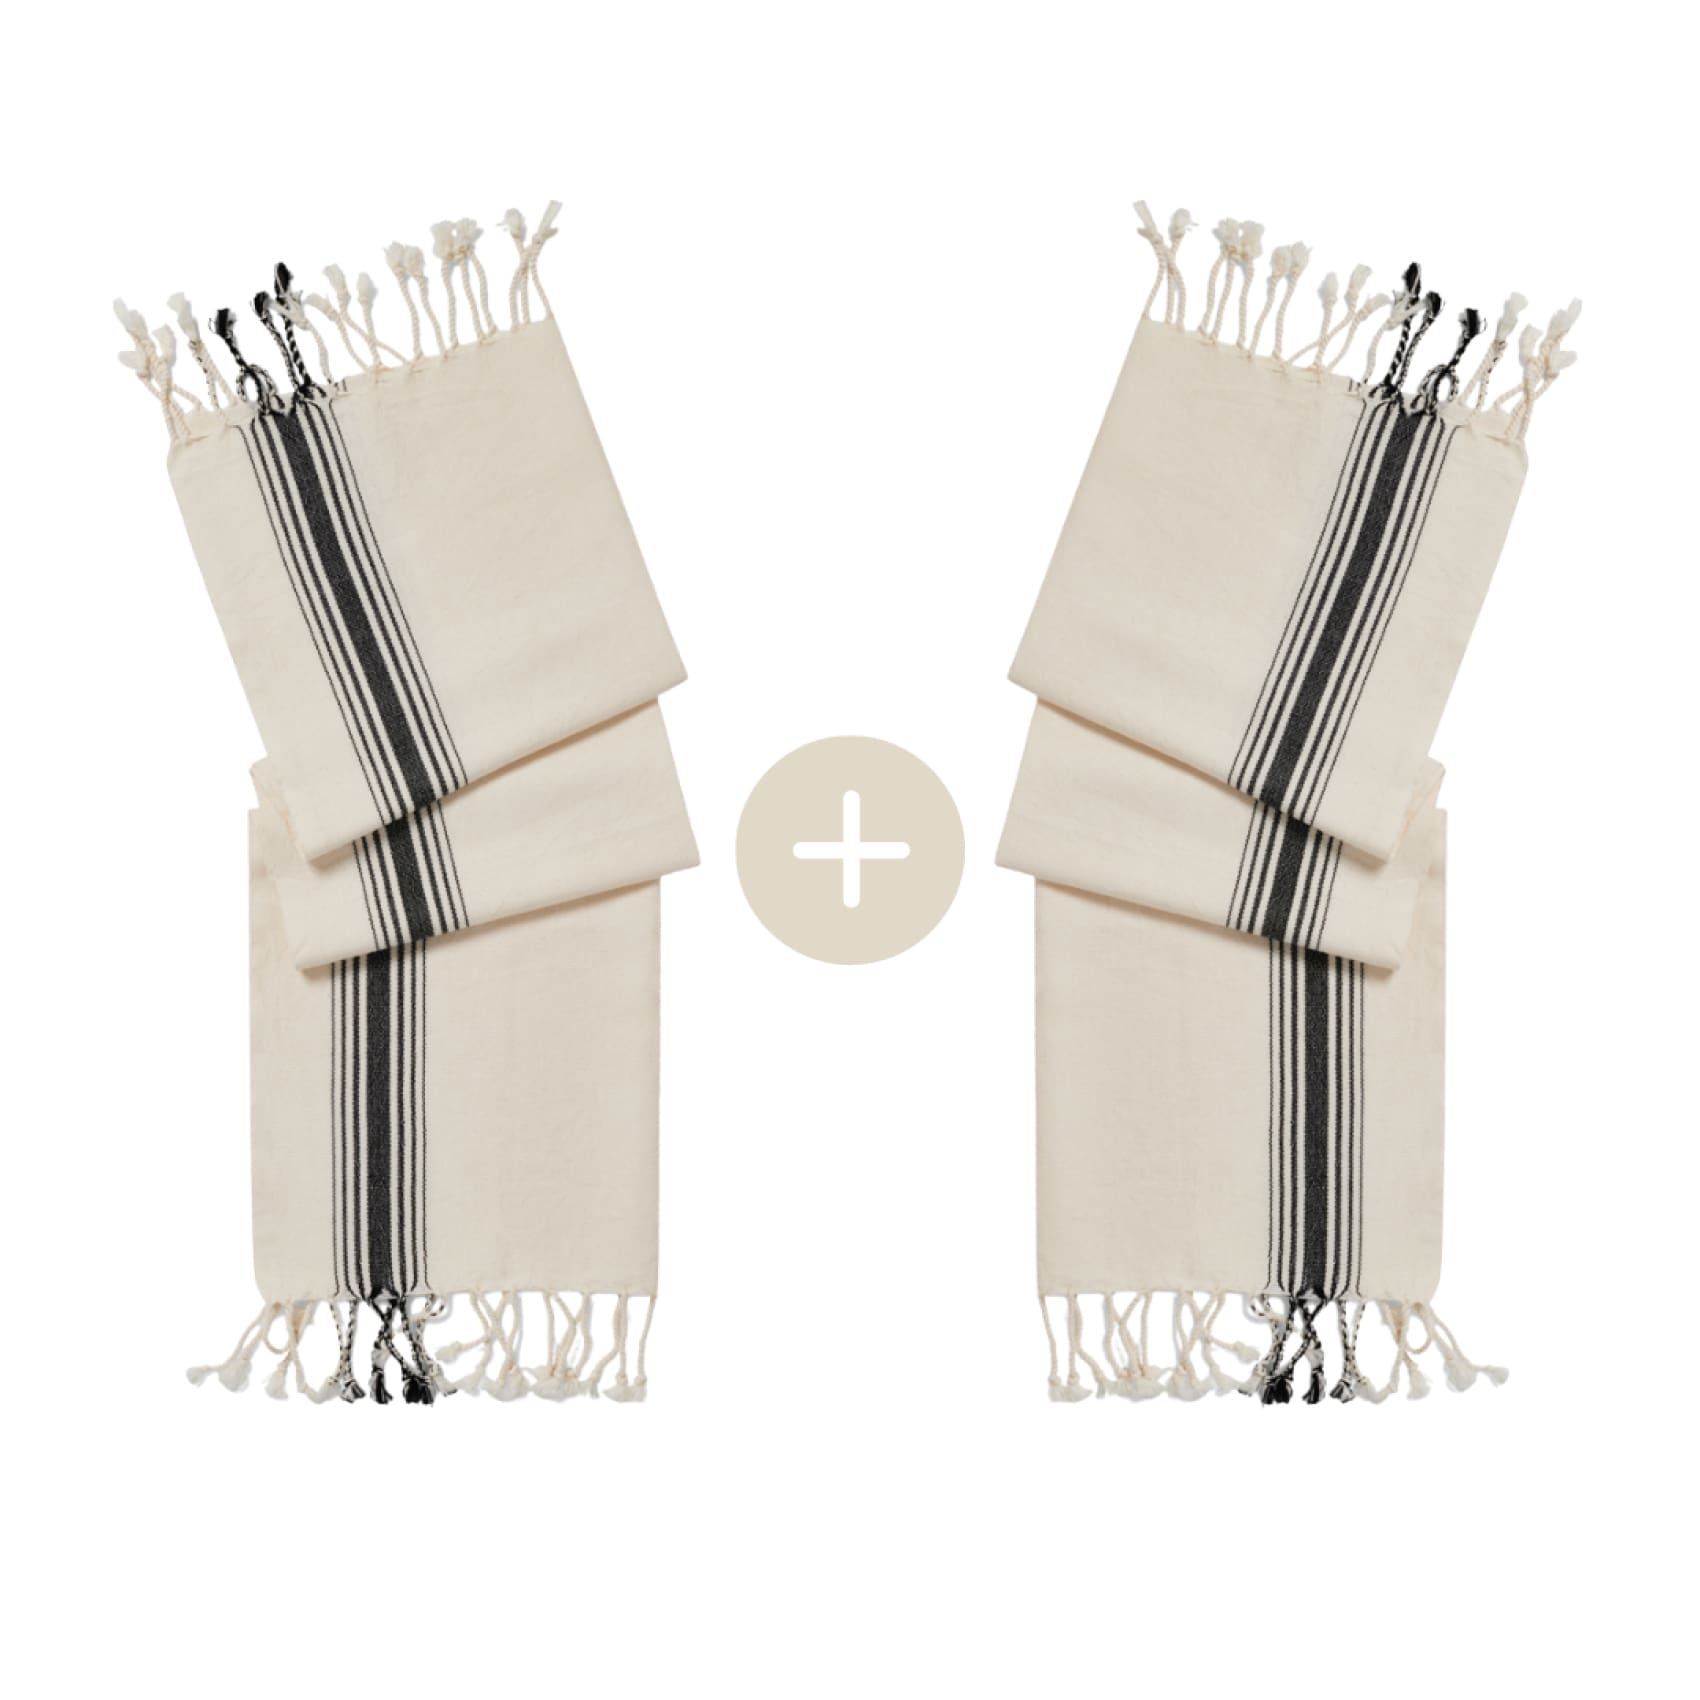 bergama-cotton-hand-towel-set-save-5-bundle-bundles-duo-luks-linen-shorts-fashion-accessory-486_c266fab2-f899-4d4a-9380-53ea363d2e77.jpg